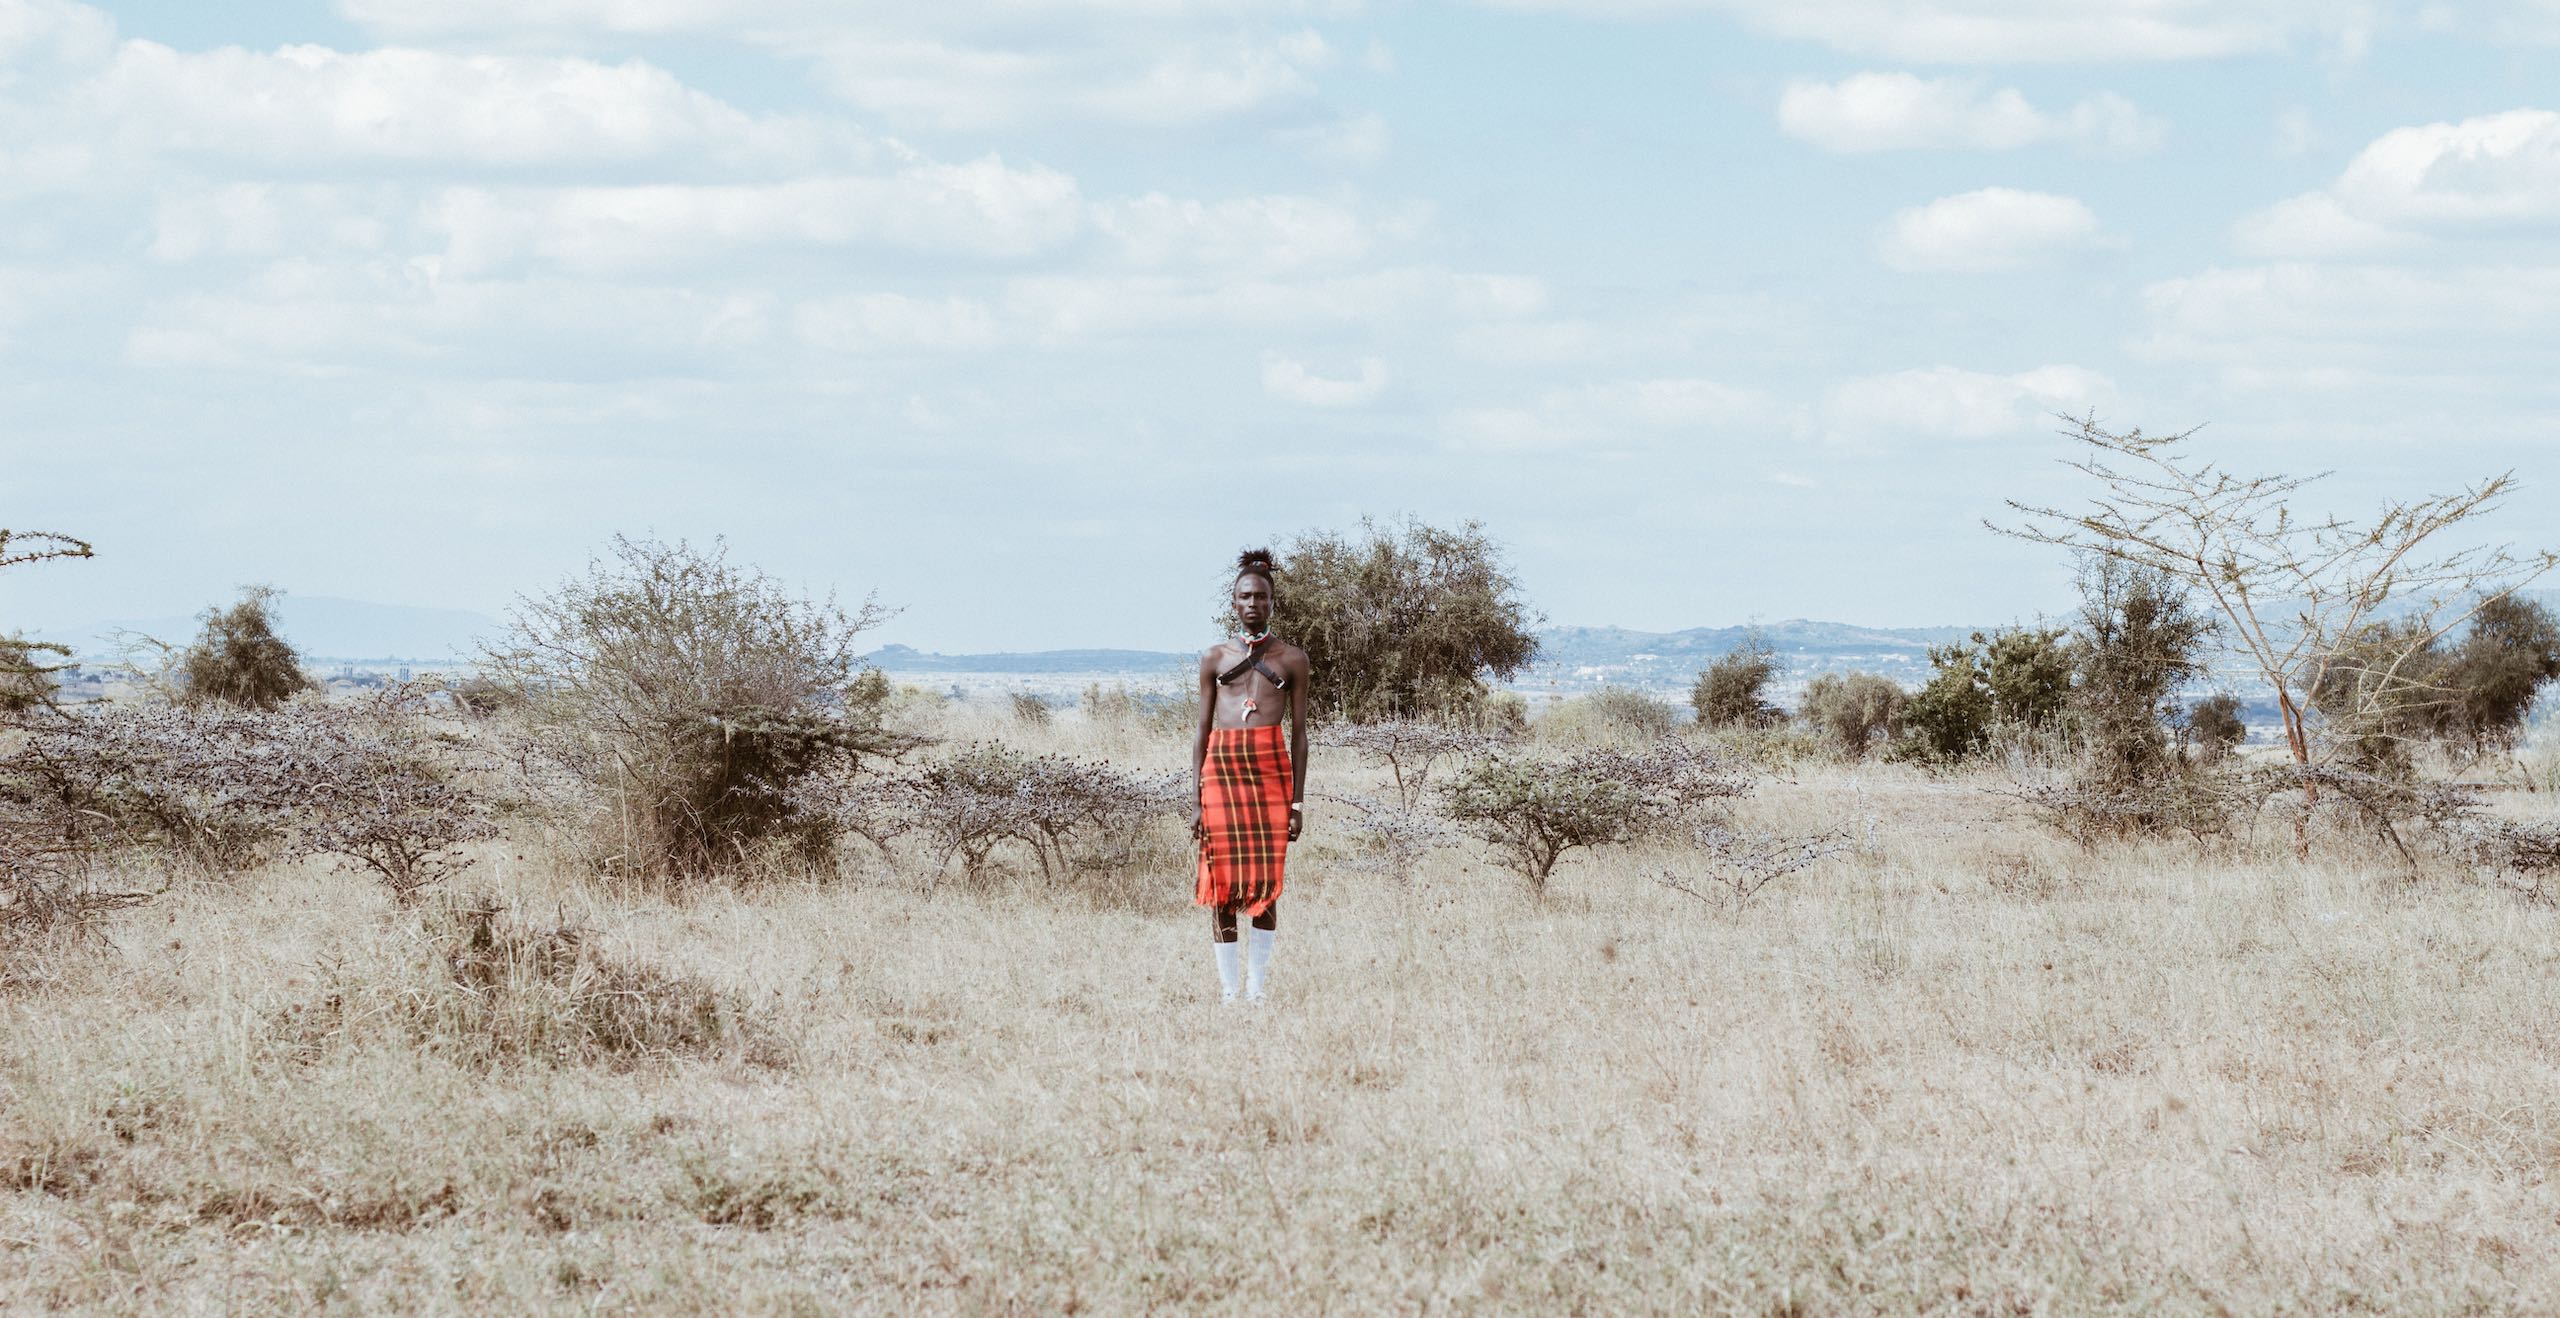   The Masai Mara & Beyond